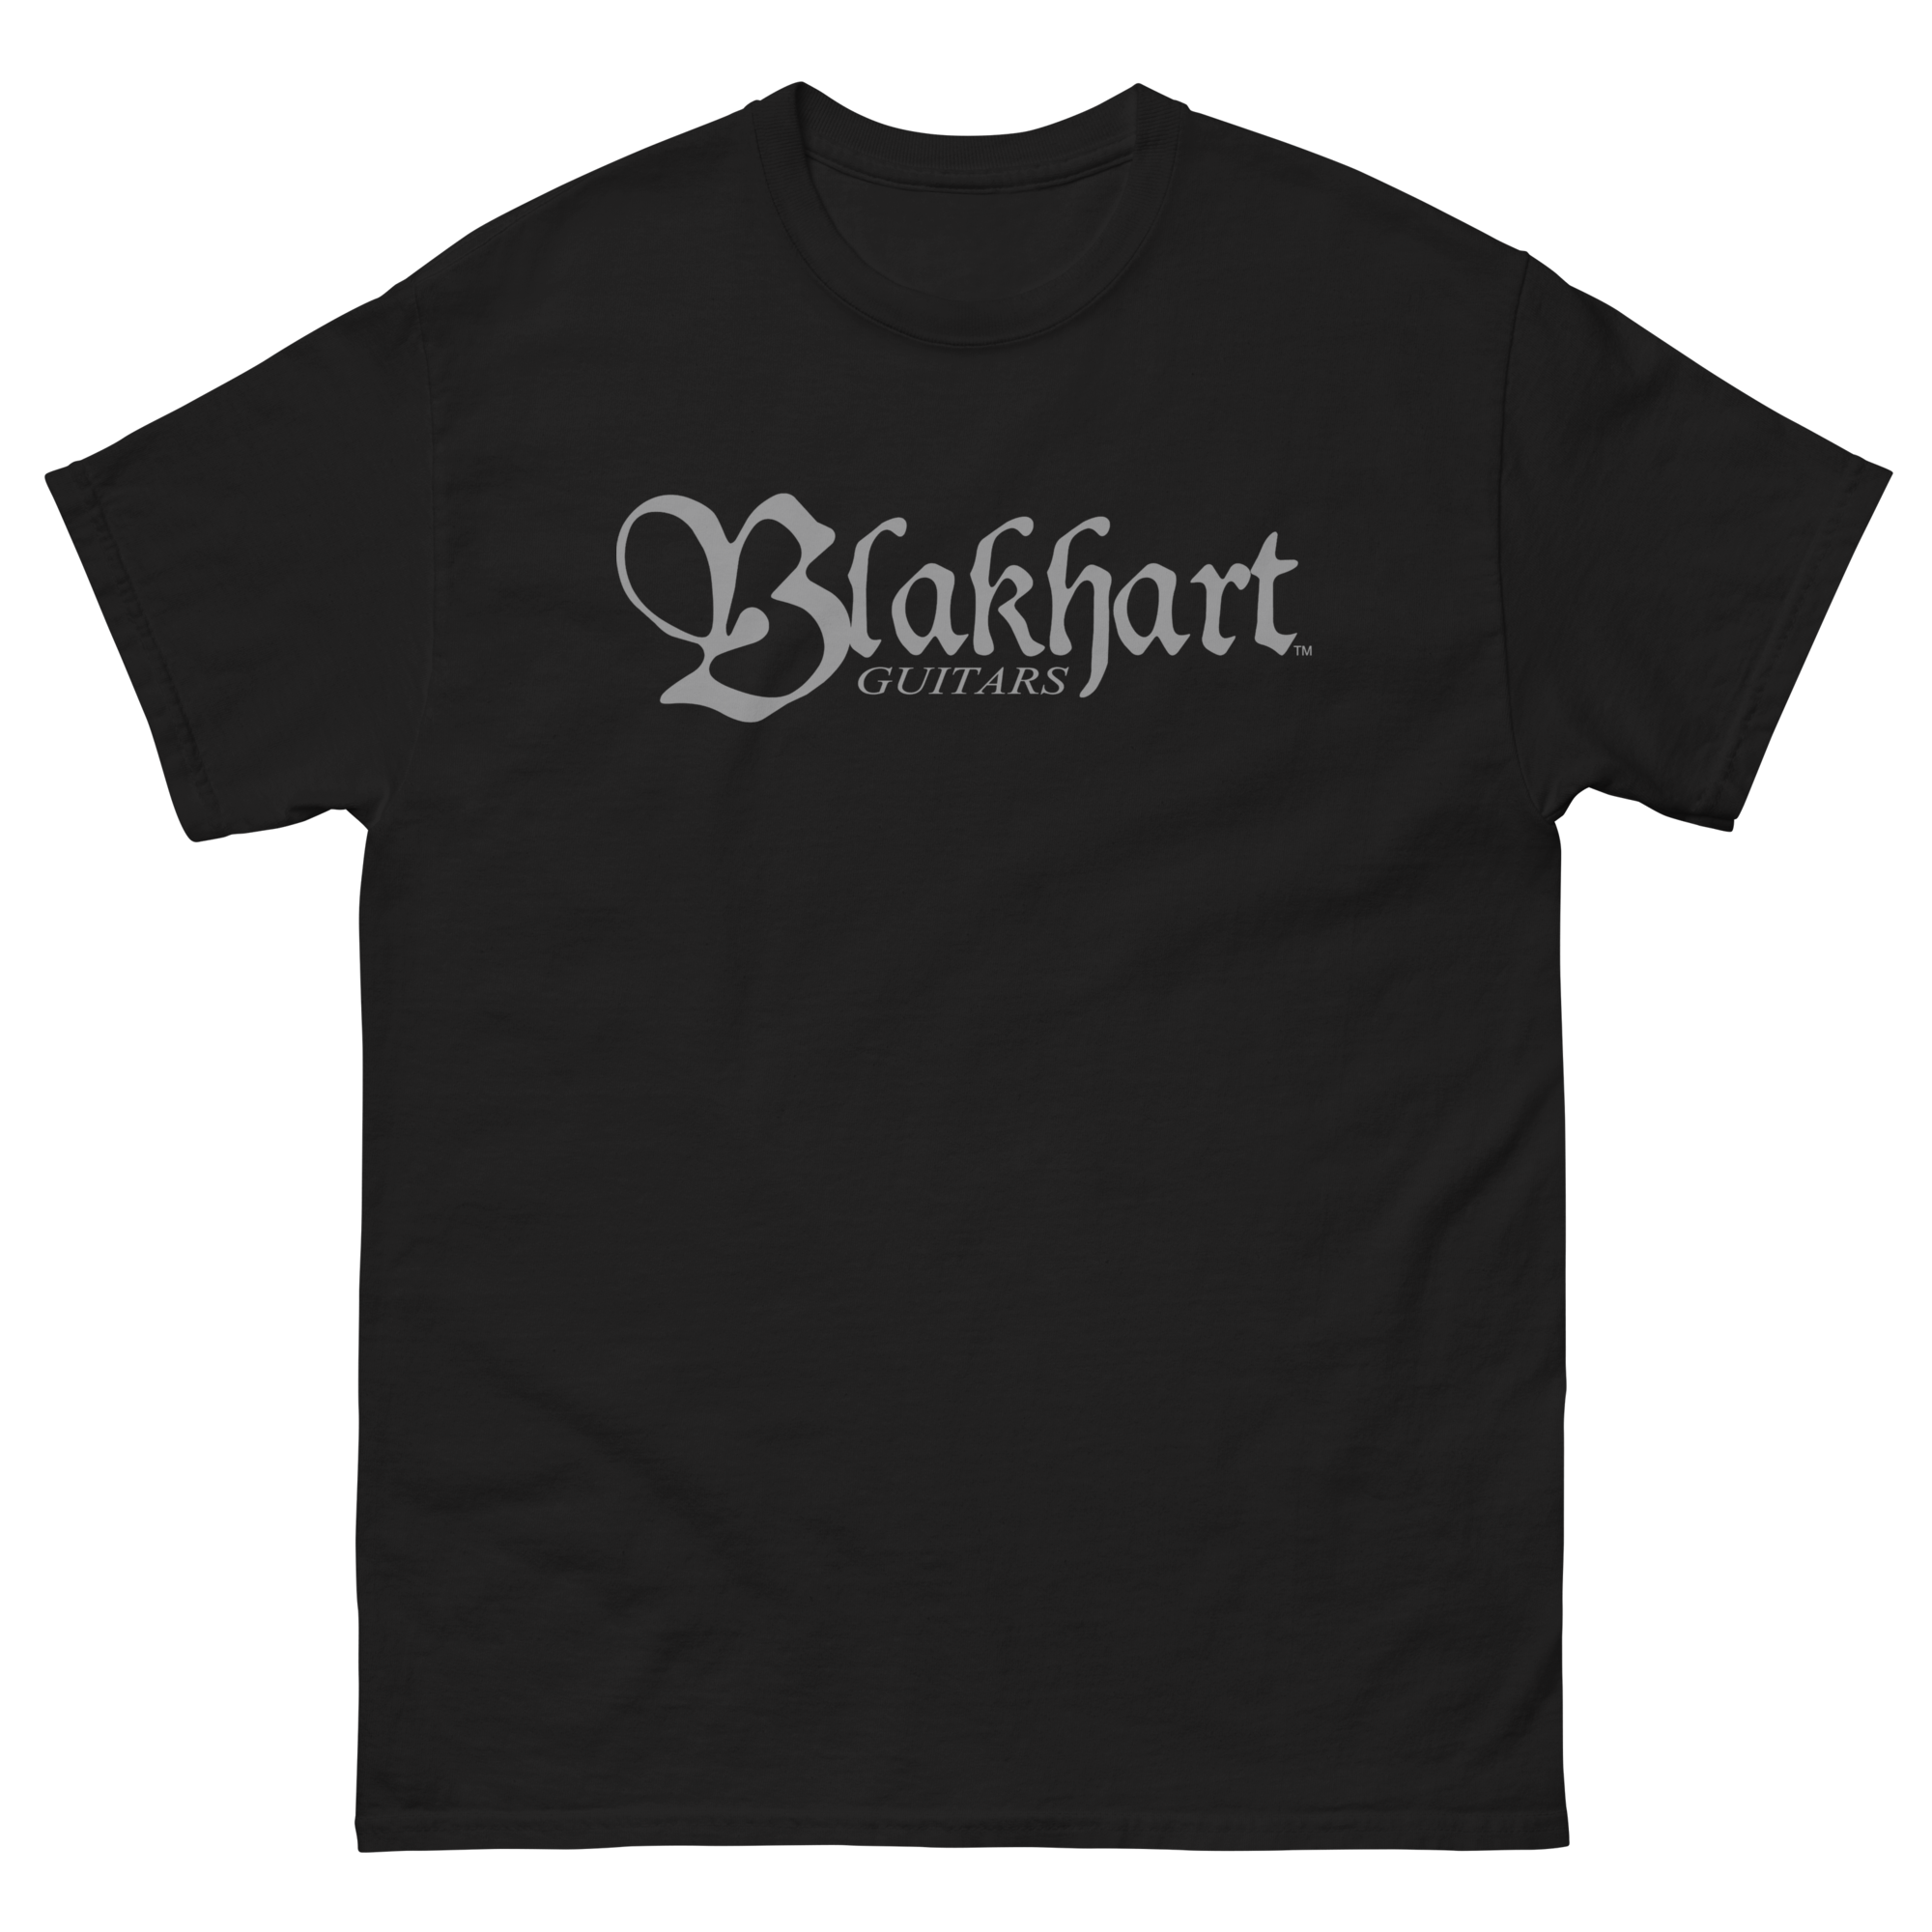 Blakhart Guitars - Made for Metal Matte Gray Short Sleeve T-shirt